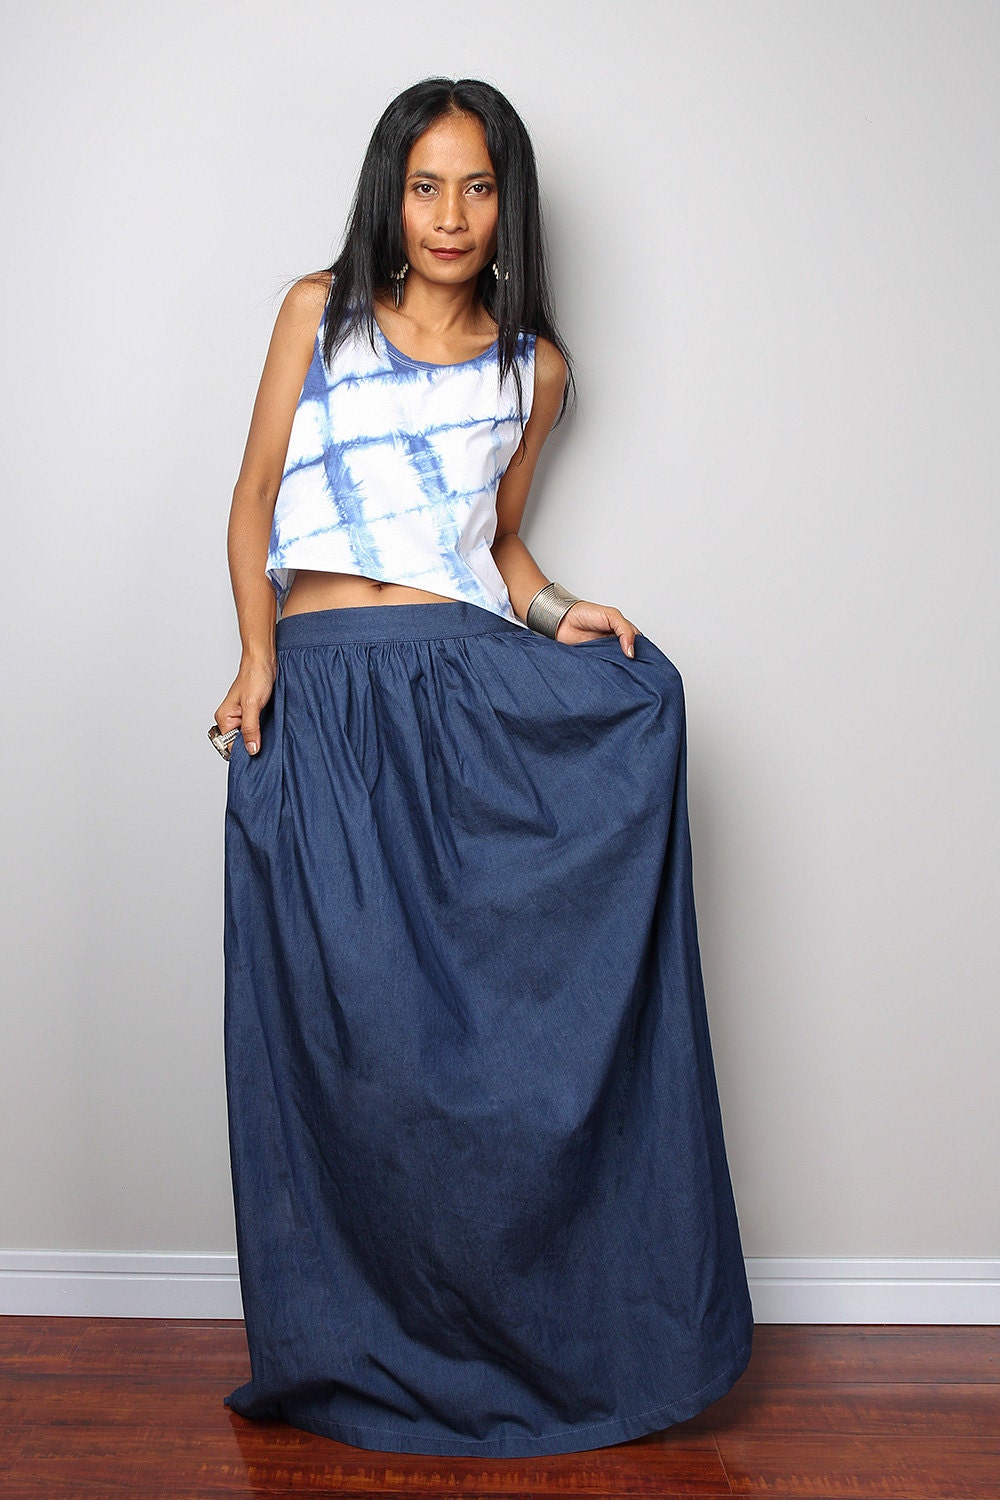 Denim Skirt / Maxi Skirt / Dark Blue Denim Skirt : The Denim